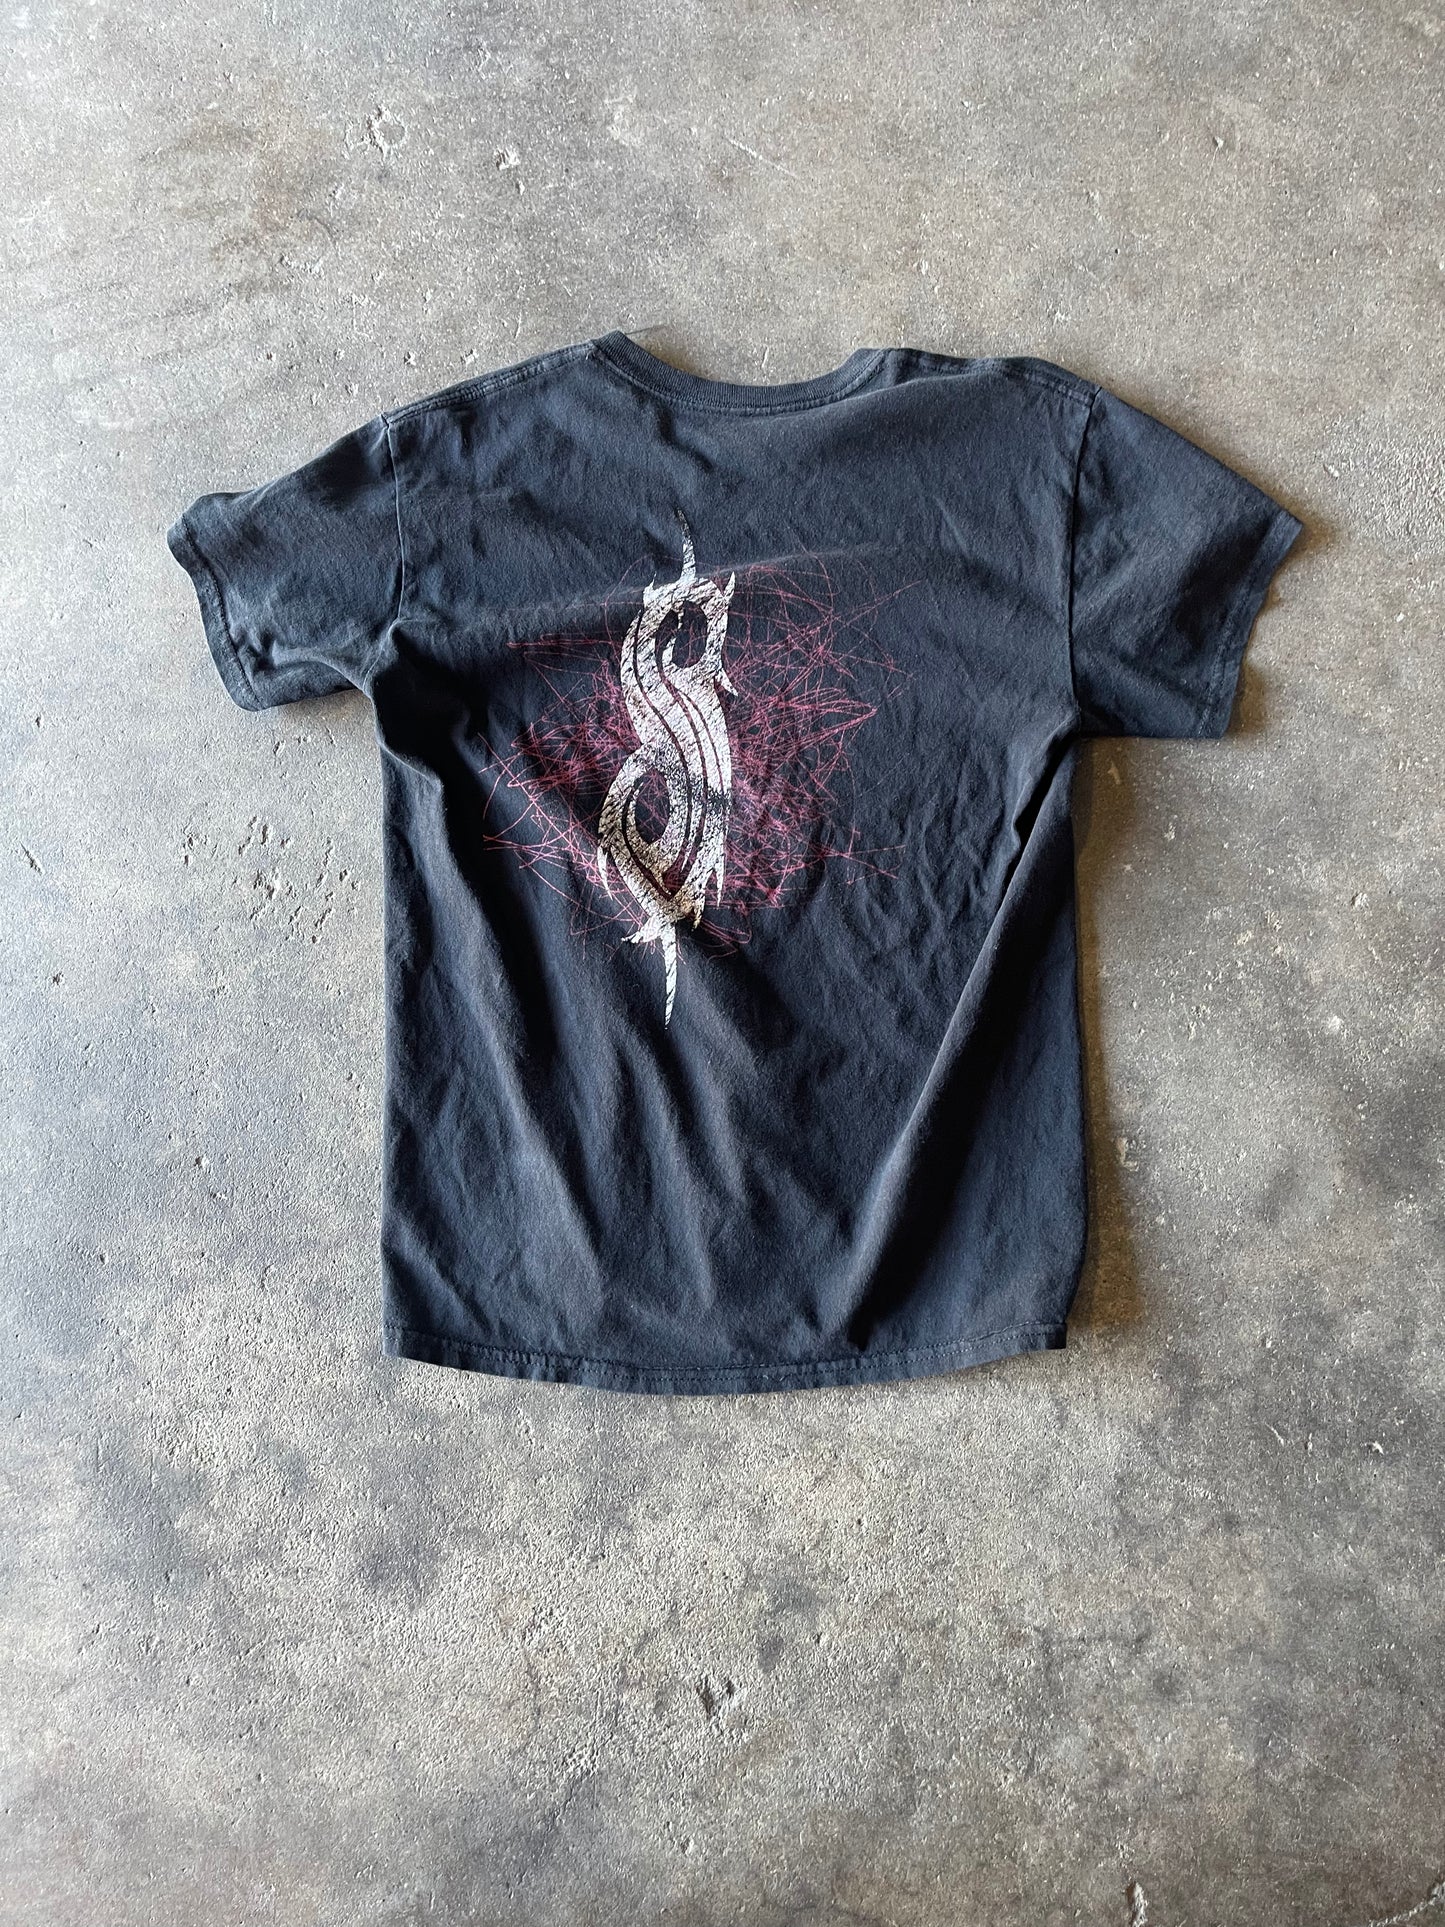 Slipknot Shirt Medium